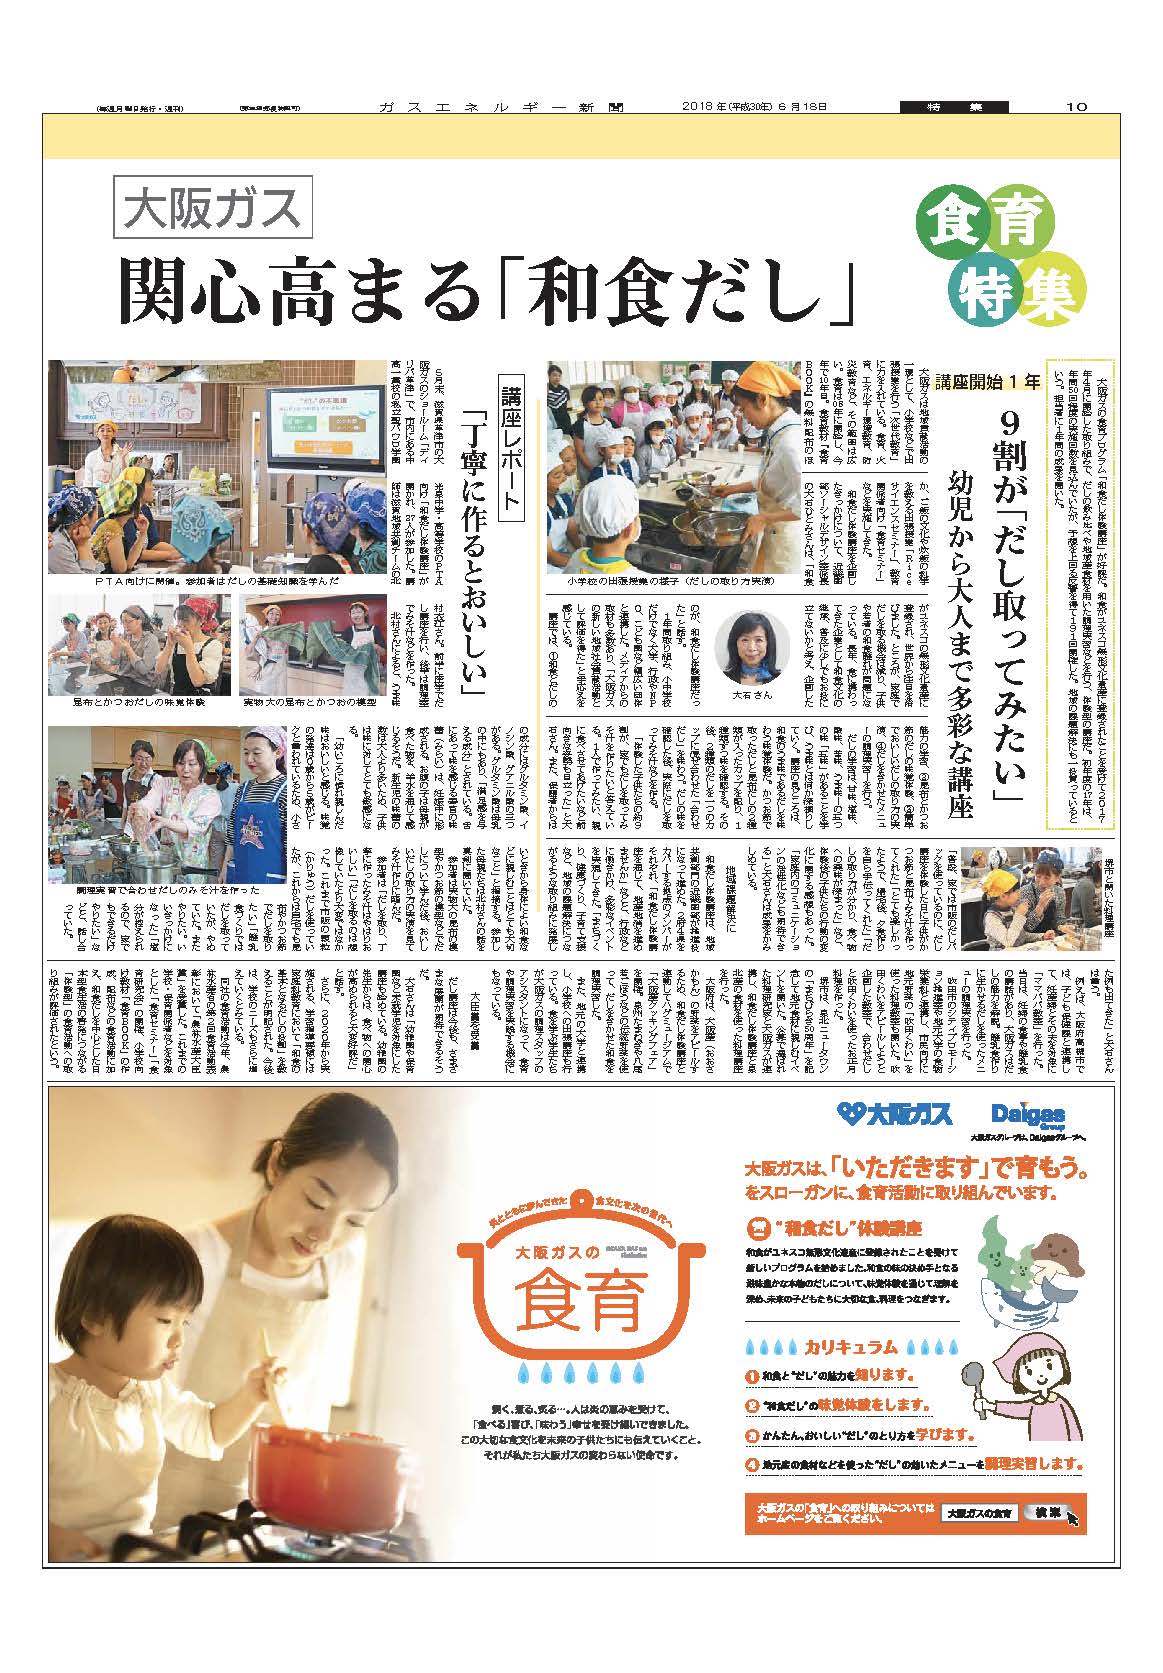 【食育特集】大阪ガス/食育で社会に貢献関心高まる「和食だし」